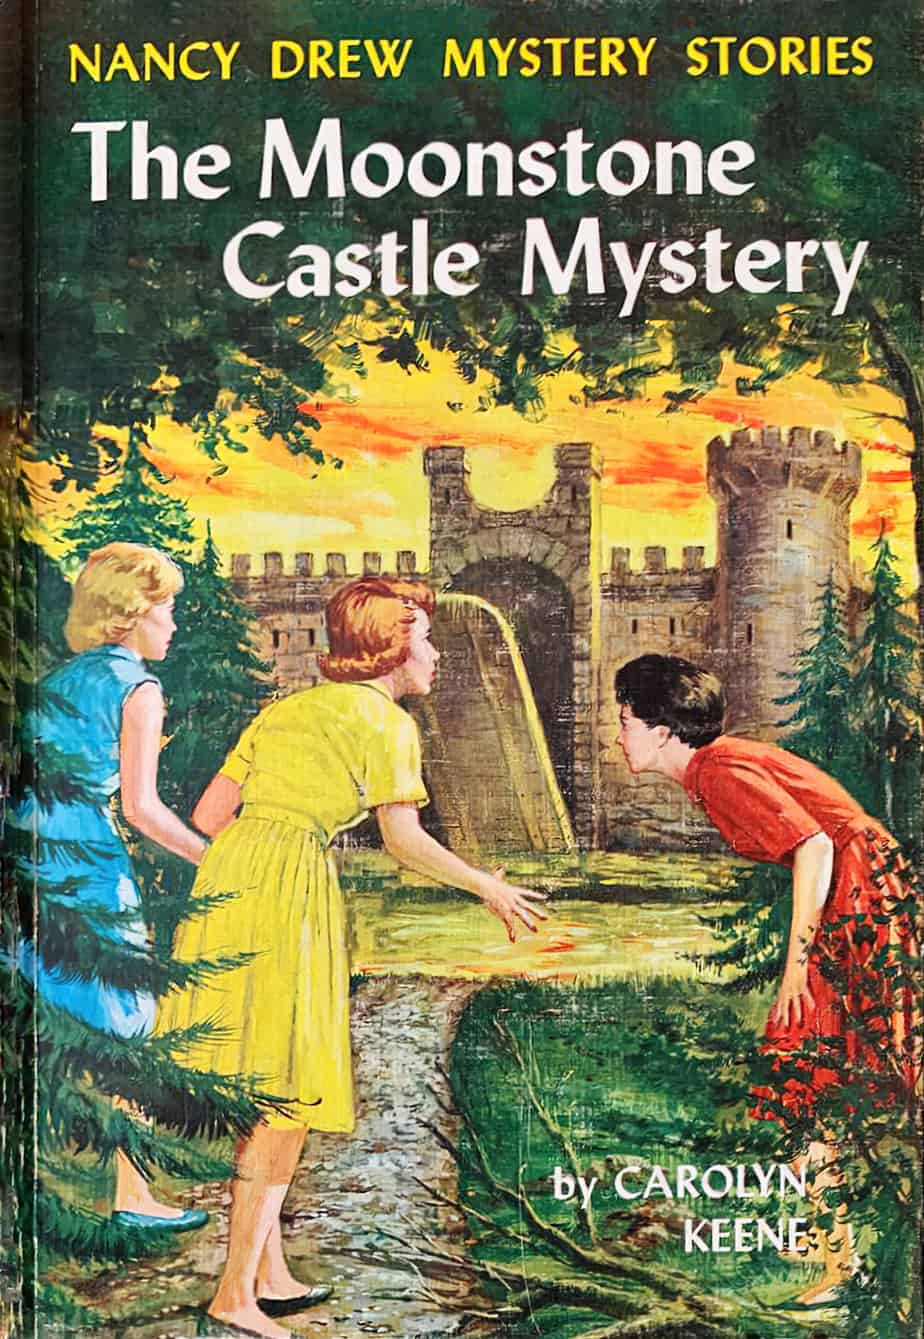 The Moonstone Castle Mystery by Carolyn Keene